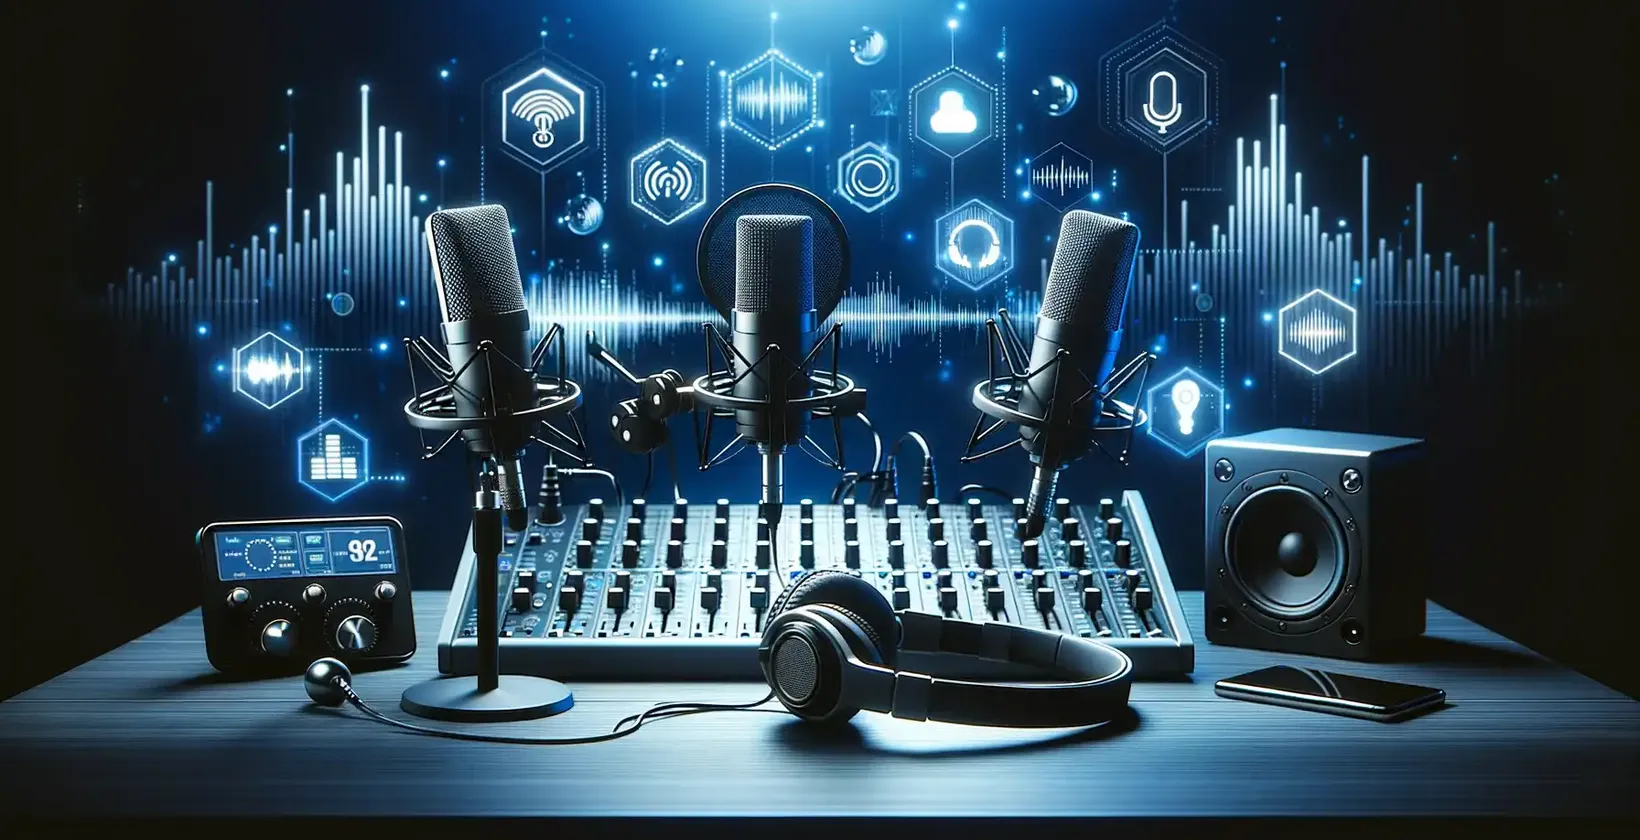 Peralatan audio dan mikrofon diletakkan di atas meja untuk menyalin podcast, sebuah strategi untuk menarik lebih banyak pelanggan.